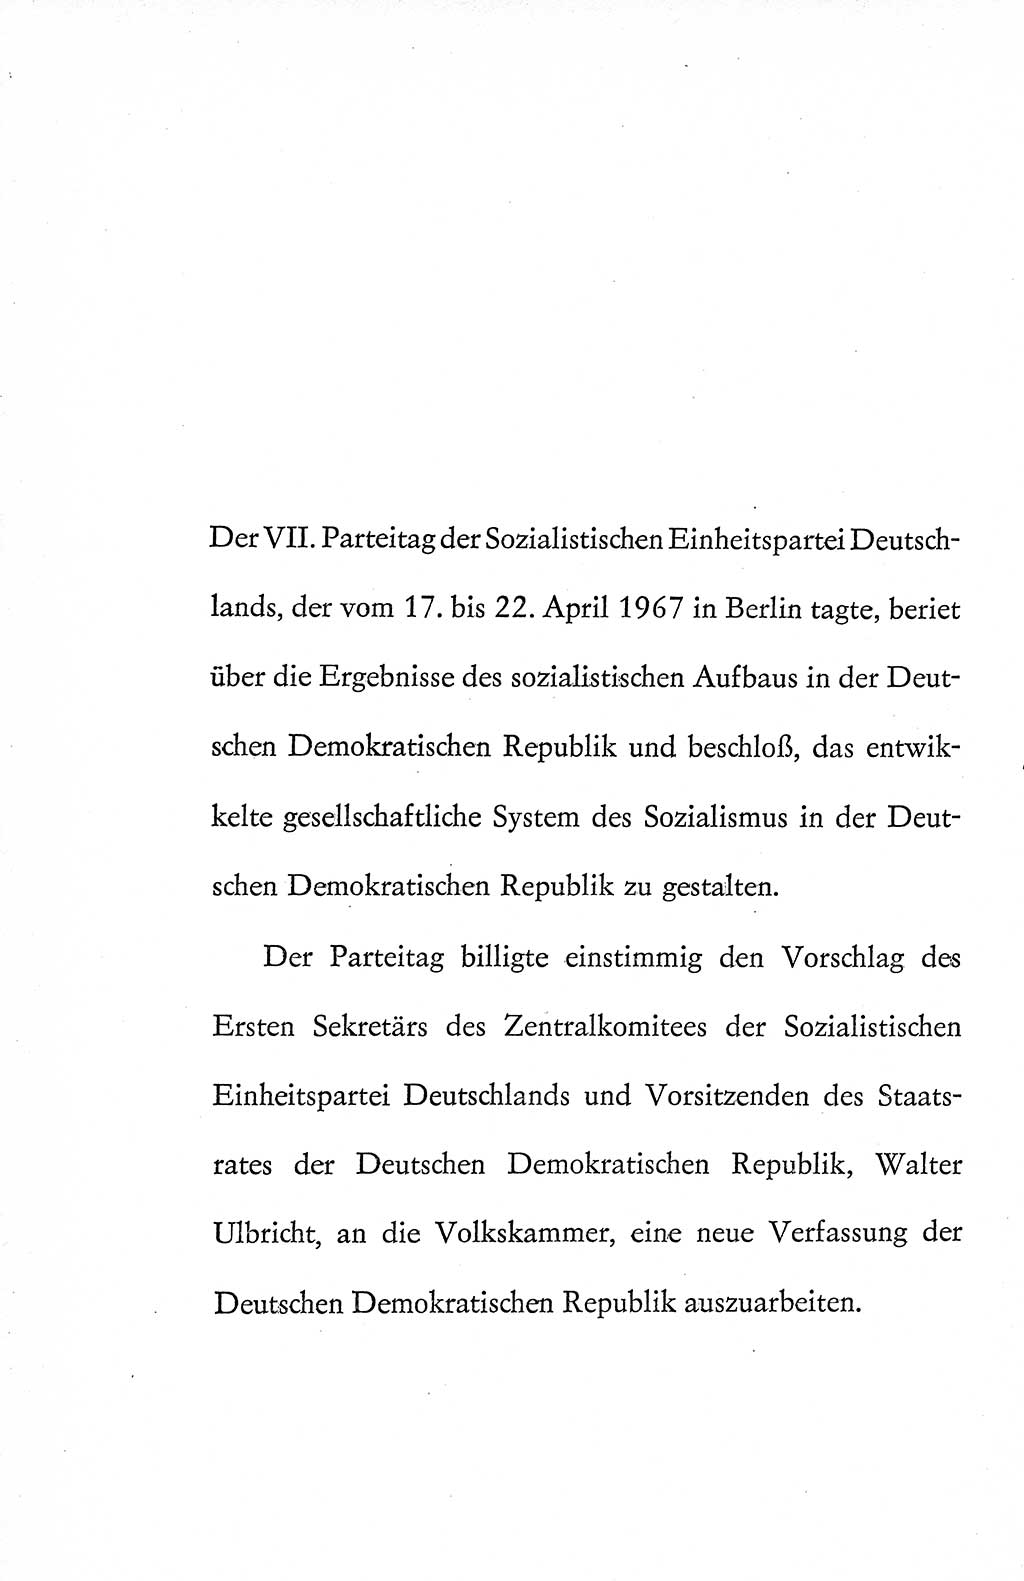 Verfassung der Deutschen Demokratischen Republik (DDR), Dokumente, Kommentar 1969, Band 1, Seite 10 (Verf. DDR Dok. Komm. 1969, Bd. 1, S. 10)